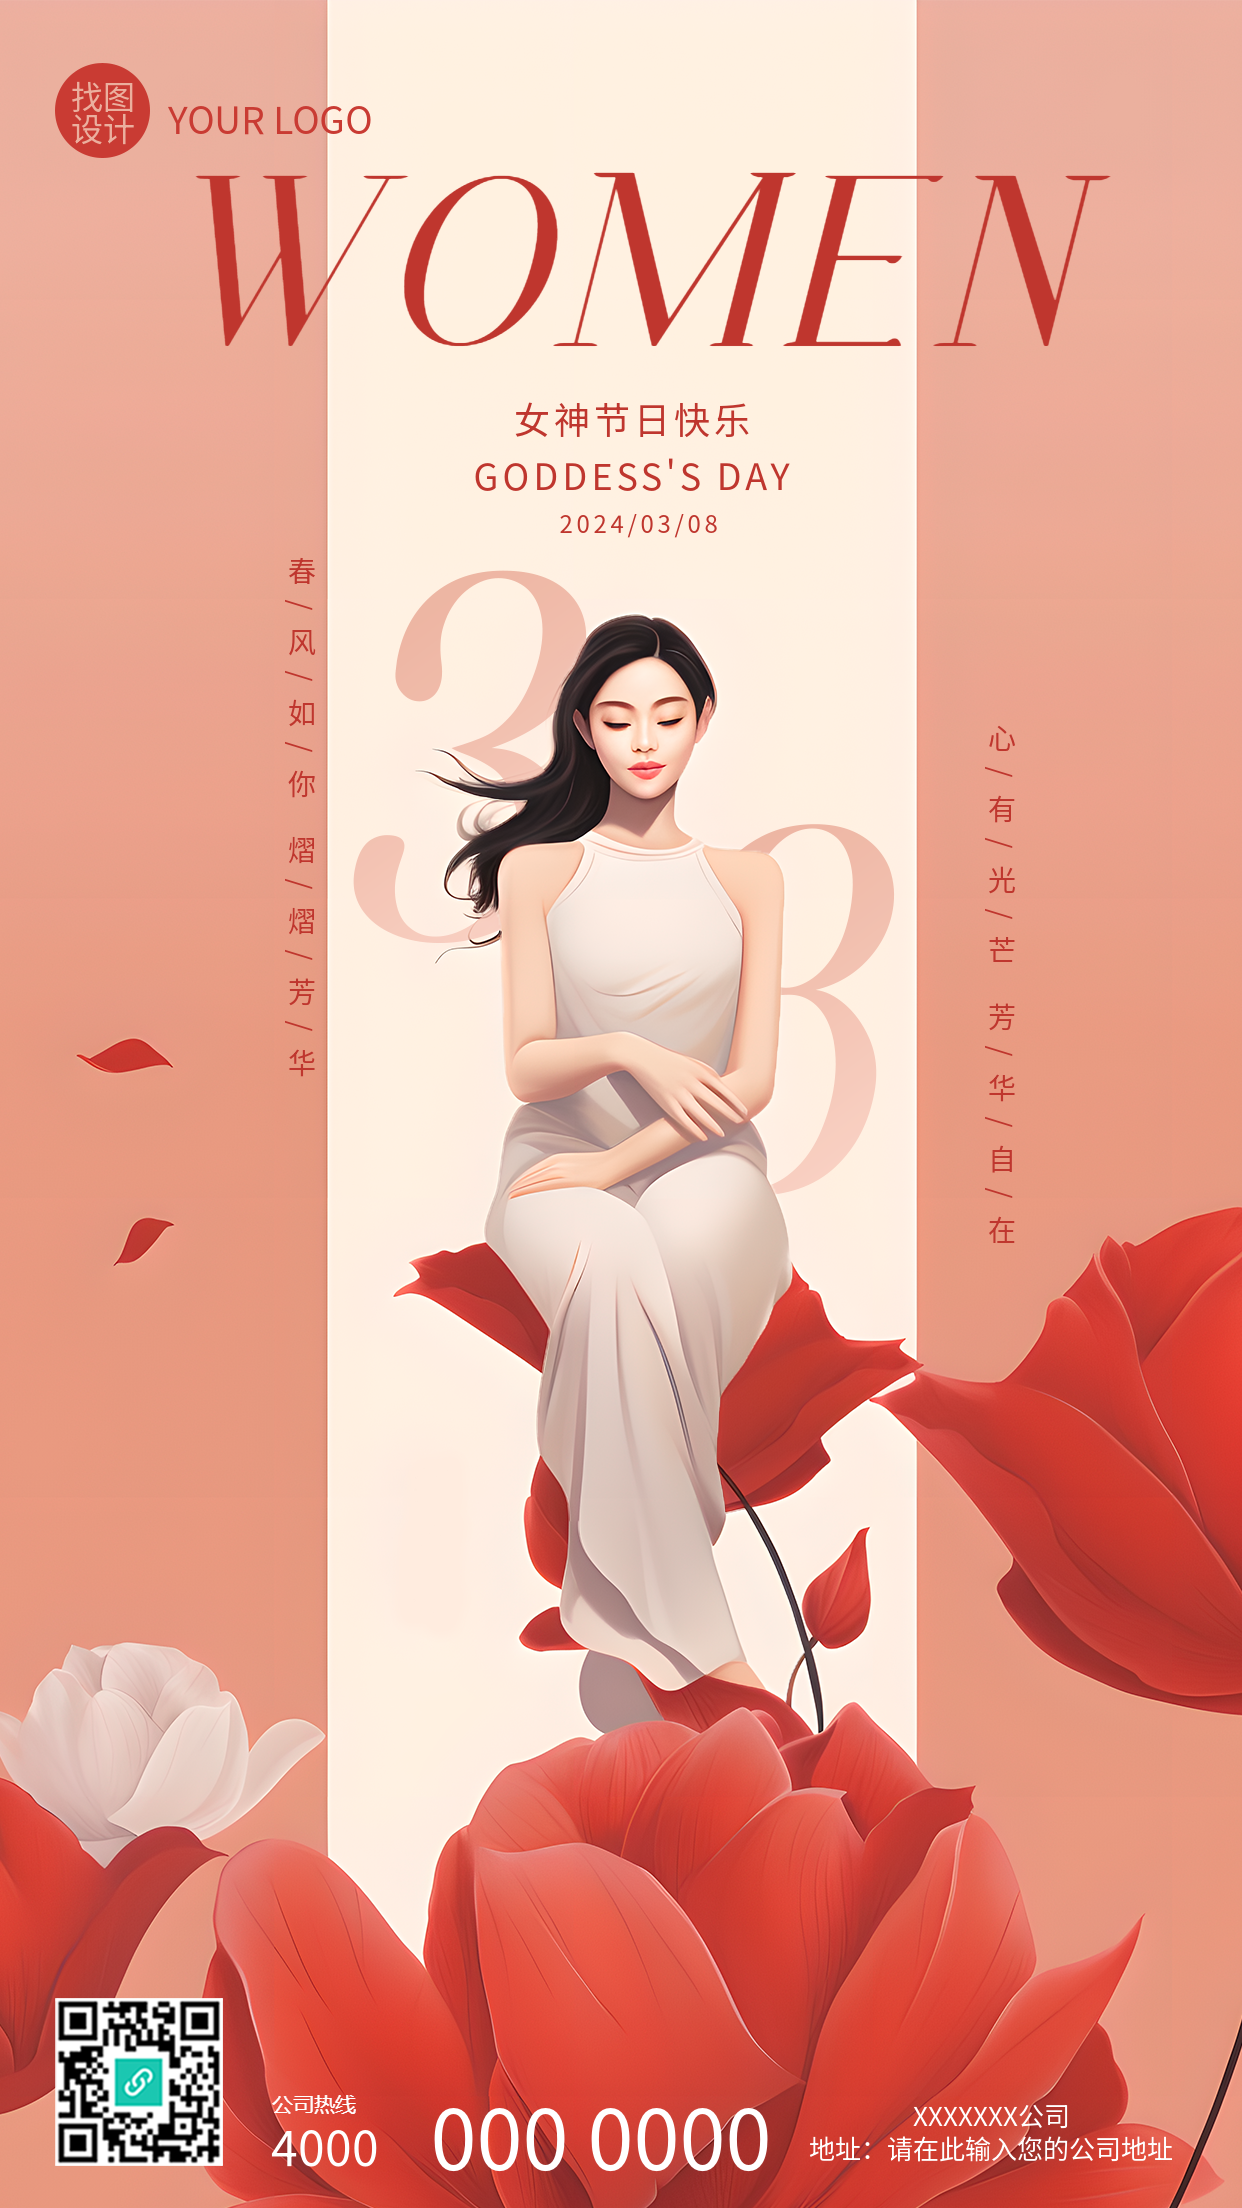 38女神节优雅女性创意手机海报